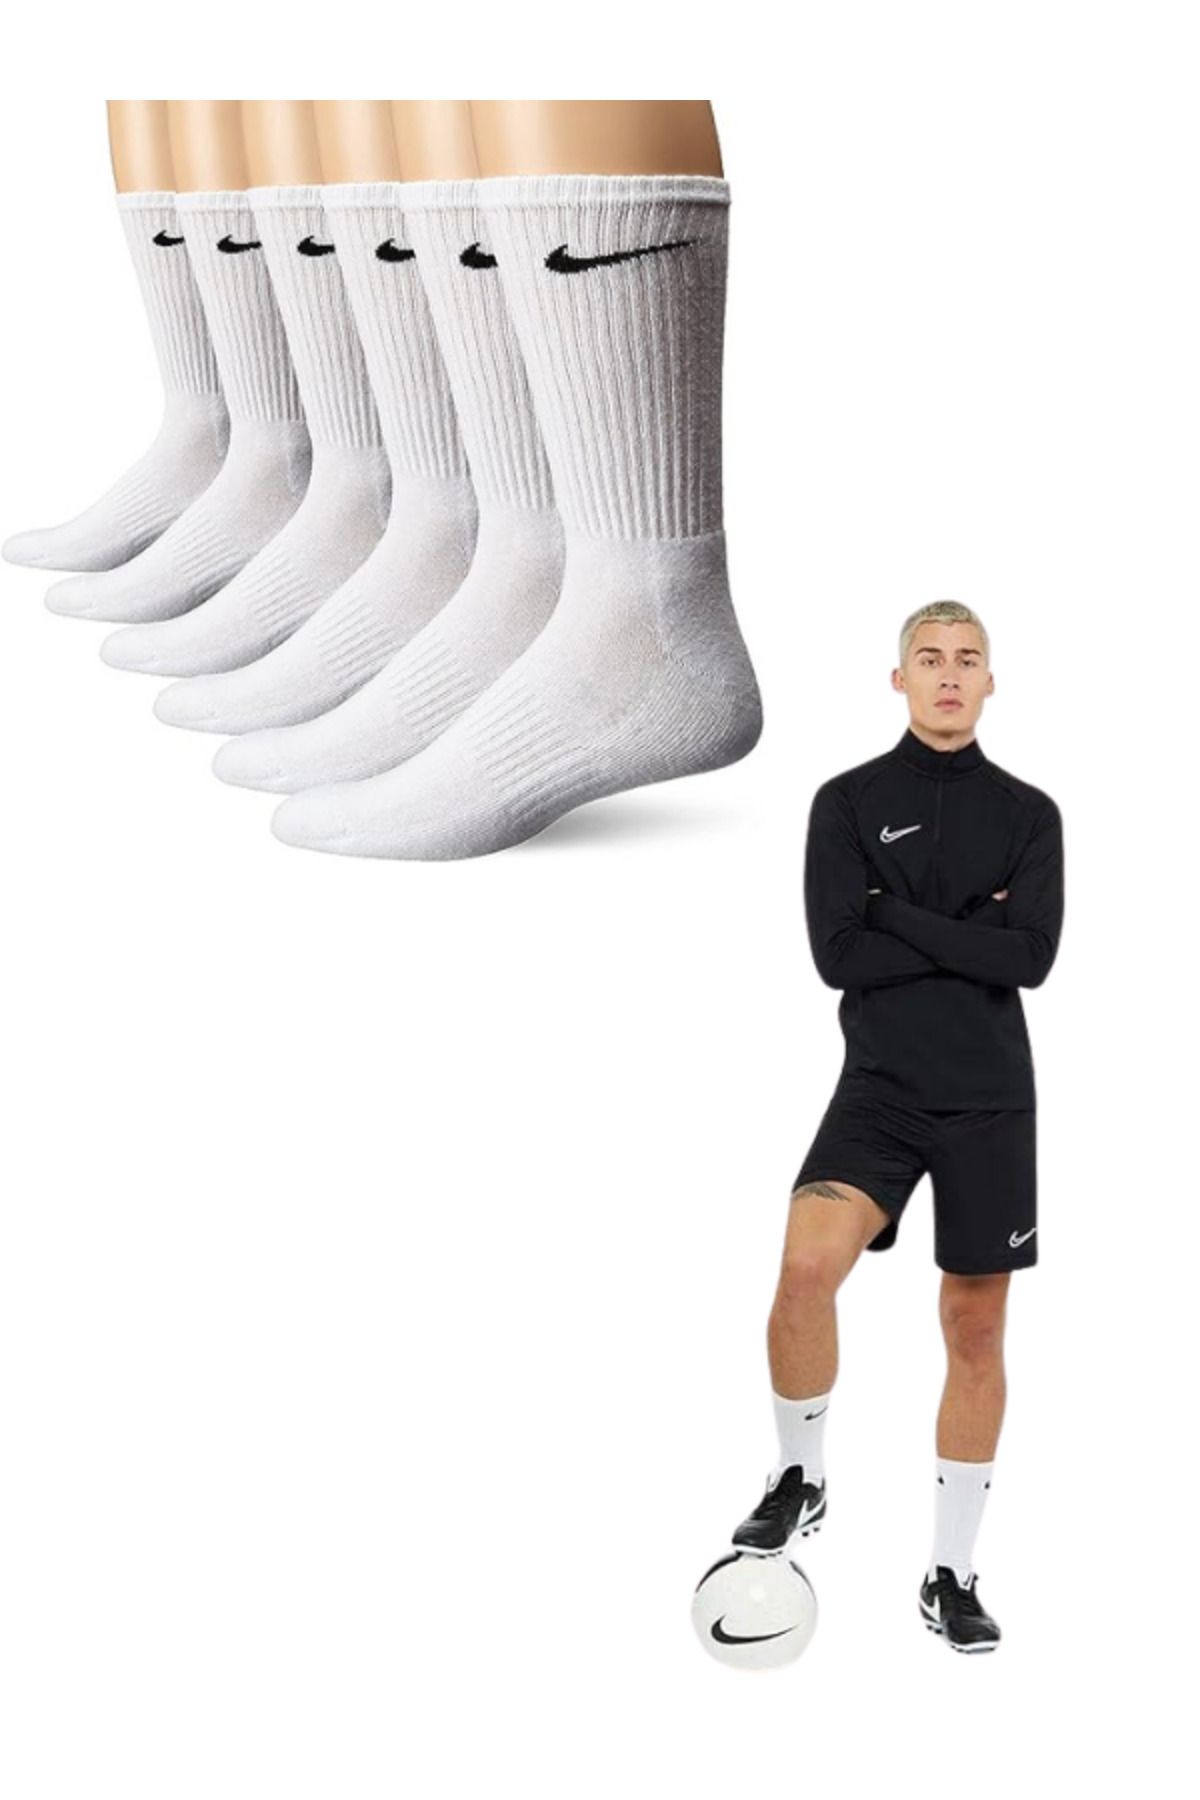 Socks Sirius 6 Çift Penye Kumaş Antrenman Spor Beyaz Siyah Futbol Maç Halı Saha Koşu Çorap Seti